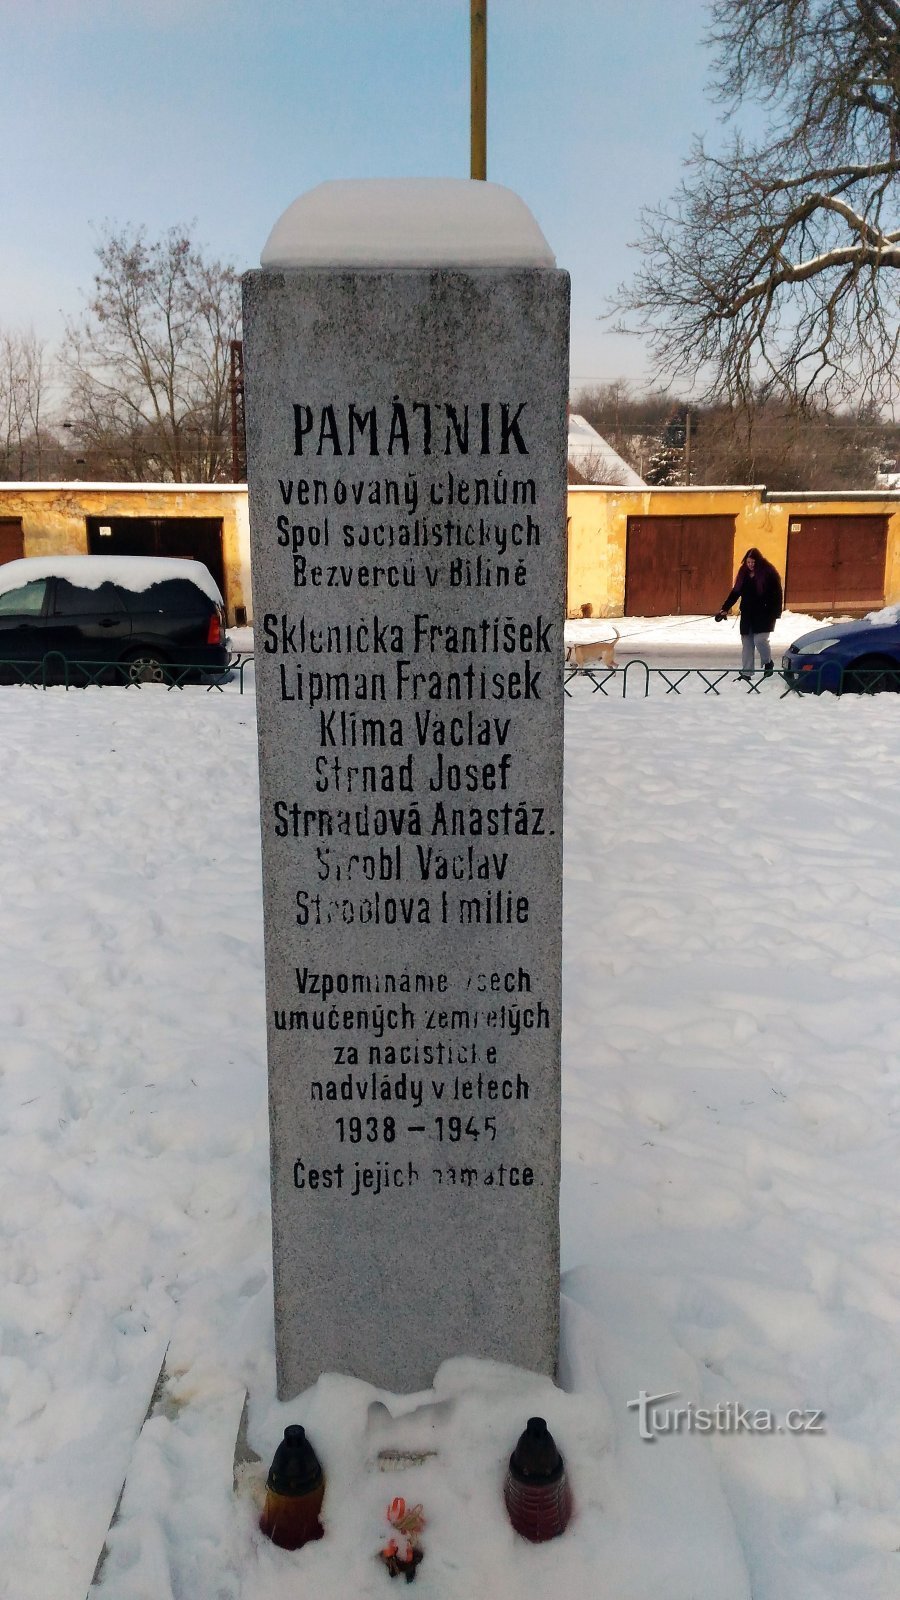 Мемориал жертвам II. Вторая мировая война в Билине.